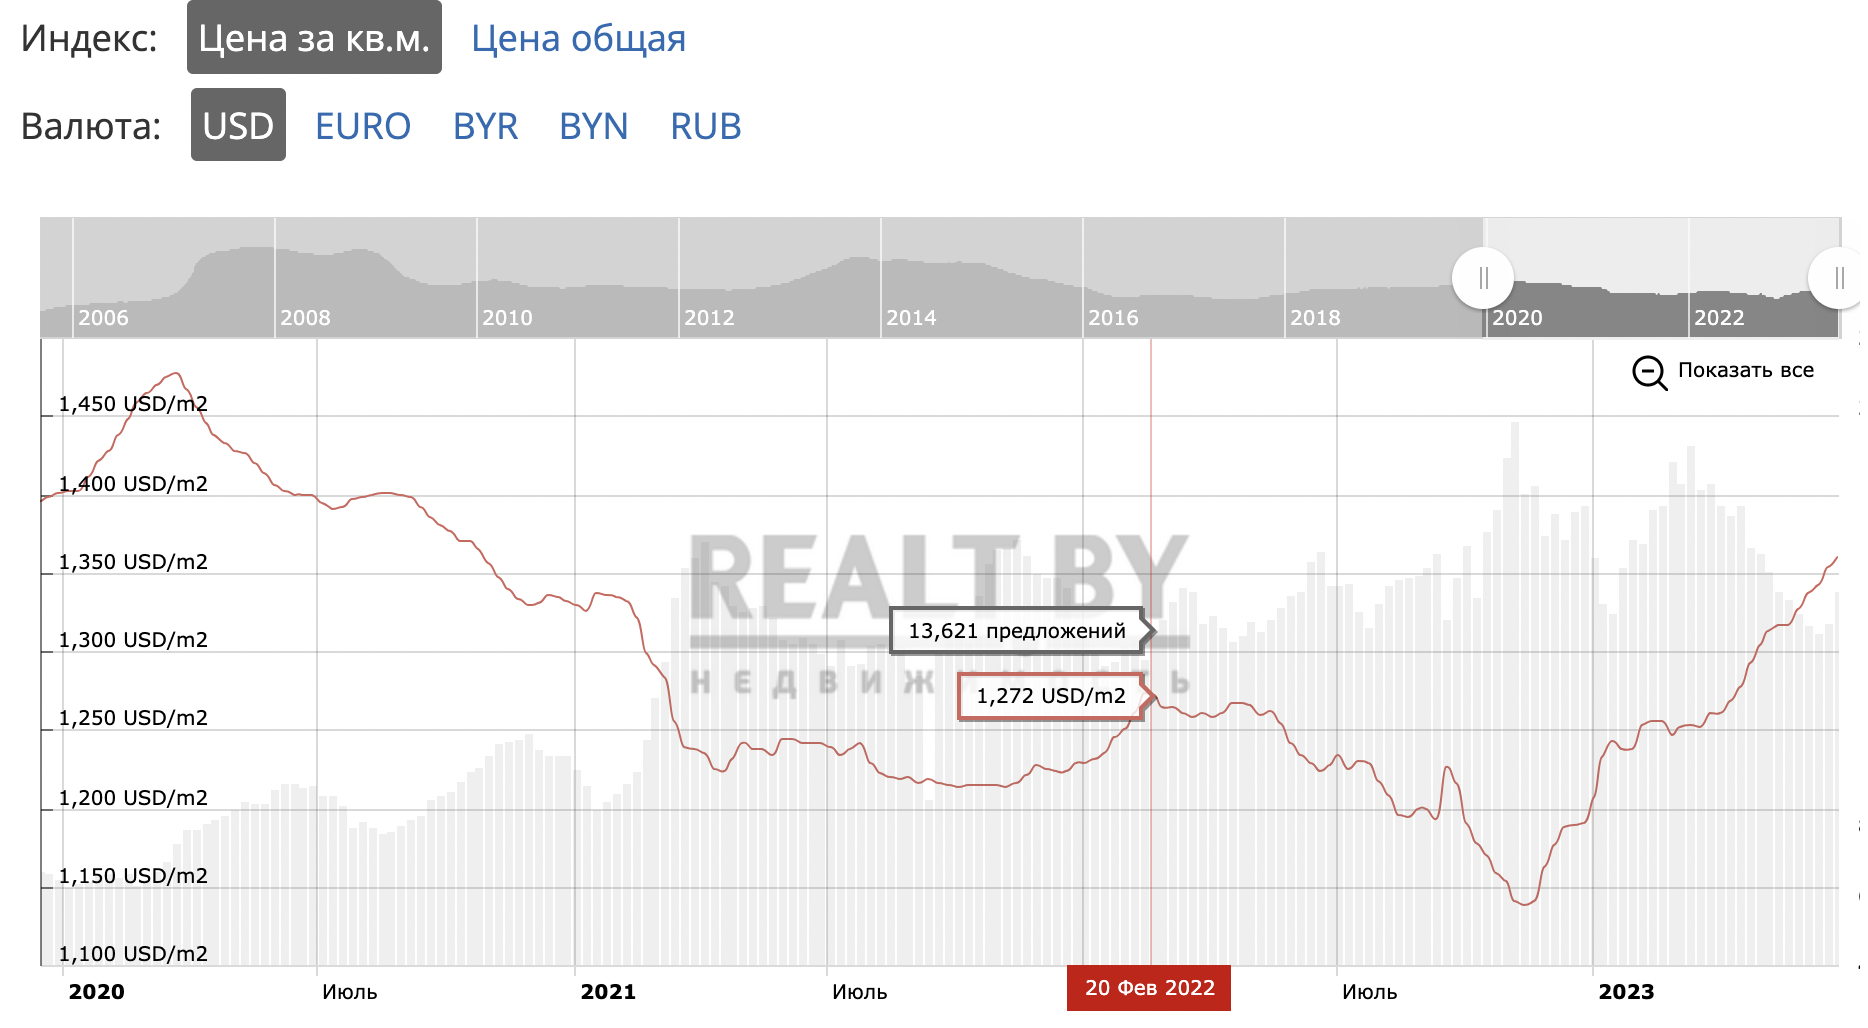 Вы не поверите, но в Минске уже полгода растут цены на жилье. С чего бы это? Поговорили с экспертами